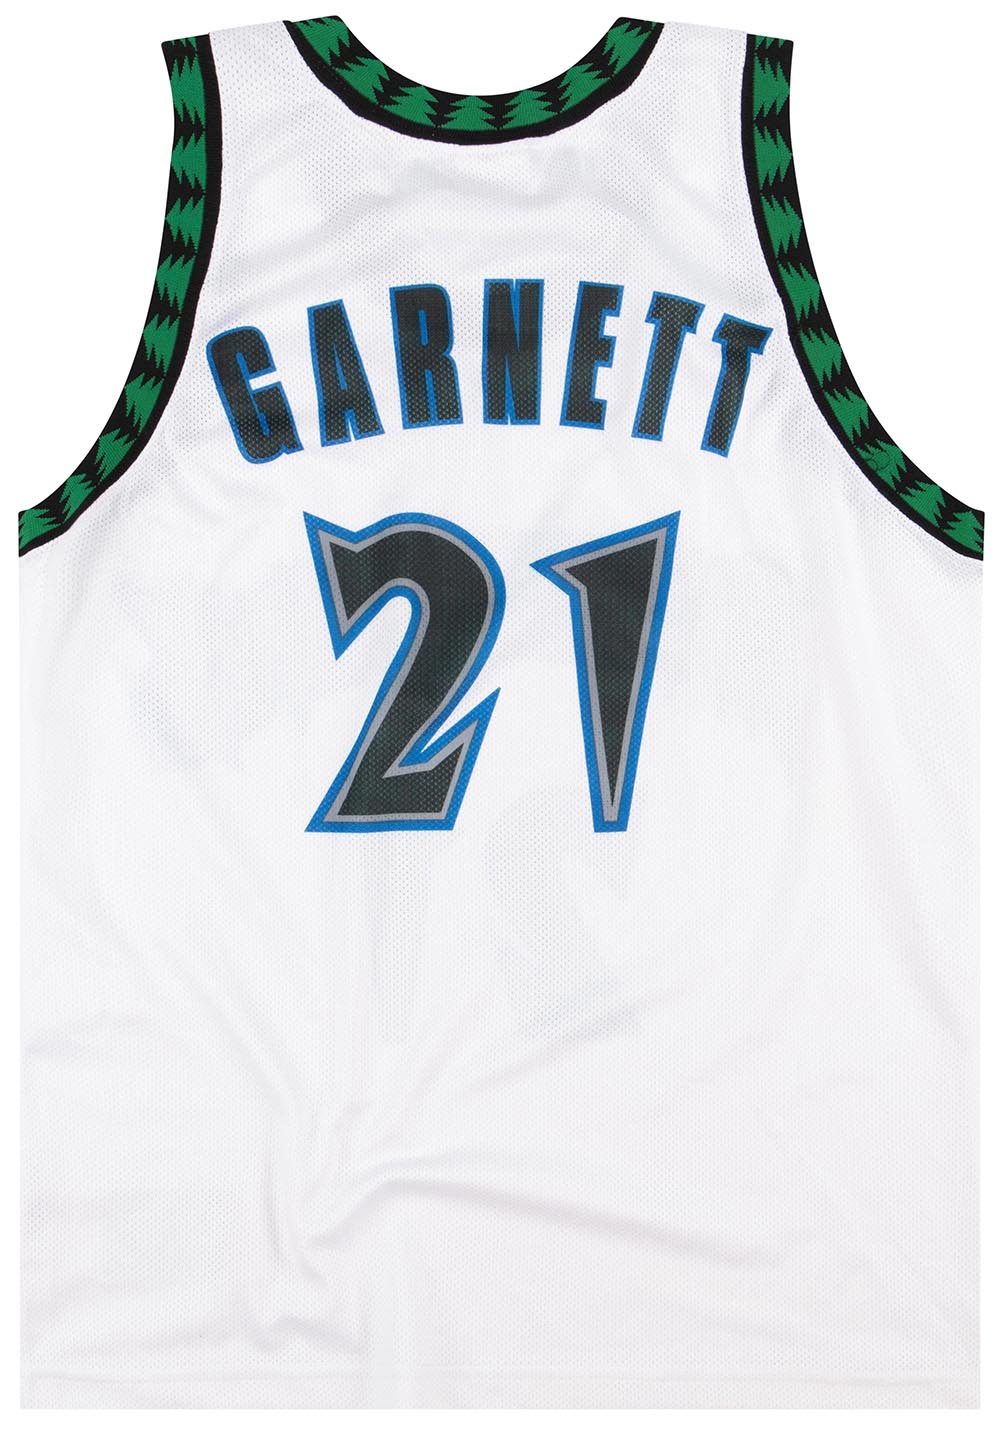 Nike Kevin Garnett NBA Jerseys for sale